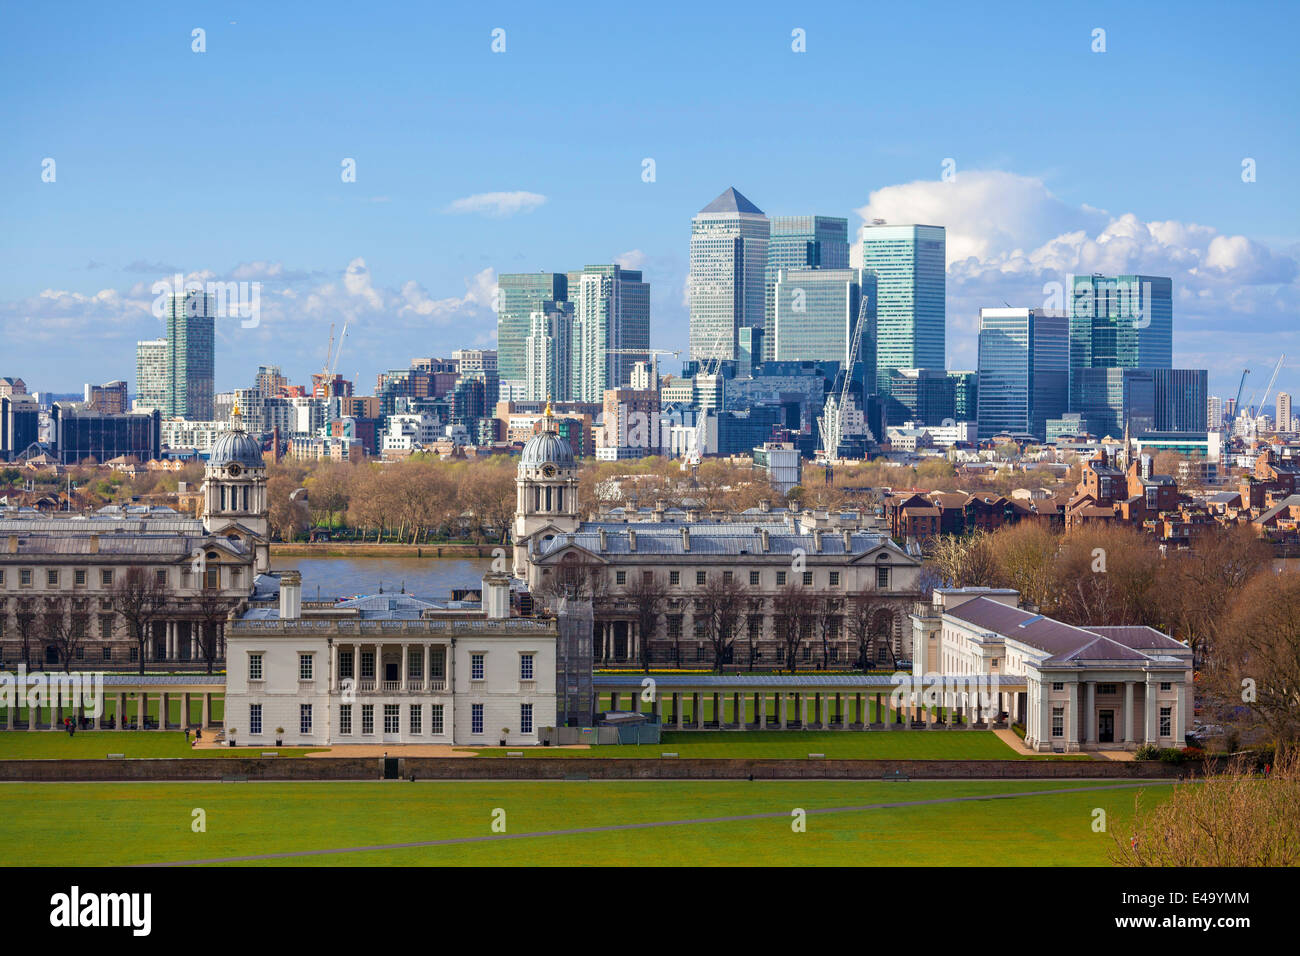 La vue de l'Old Royal Naval College et Canary Wharf, prises à partir de Greenwich Park, Londres, Angleterre, Royaume-Uni, Europe Banque D'Images